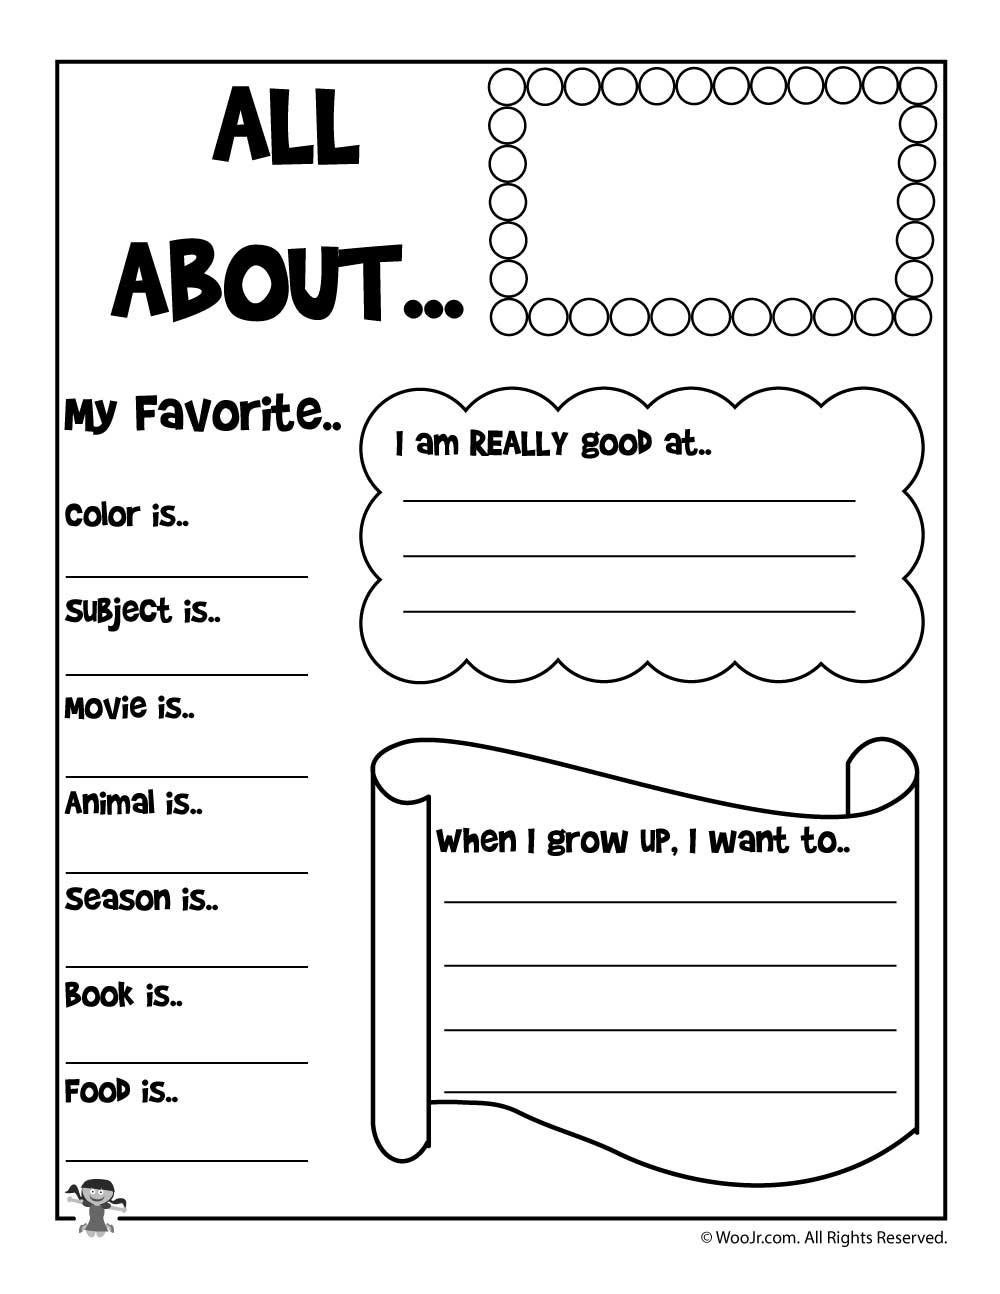 All About Me Printable Worksheet | Woo! Jr. Kids Activities | All About Me Printable Worksheets